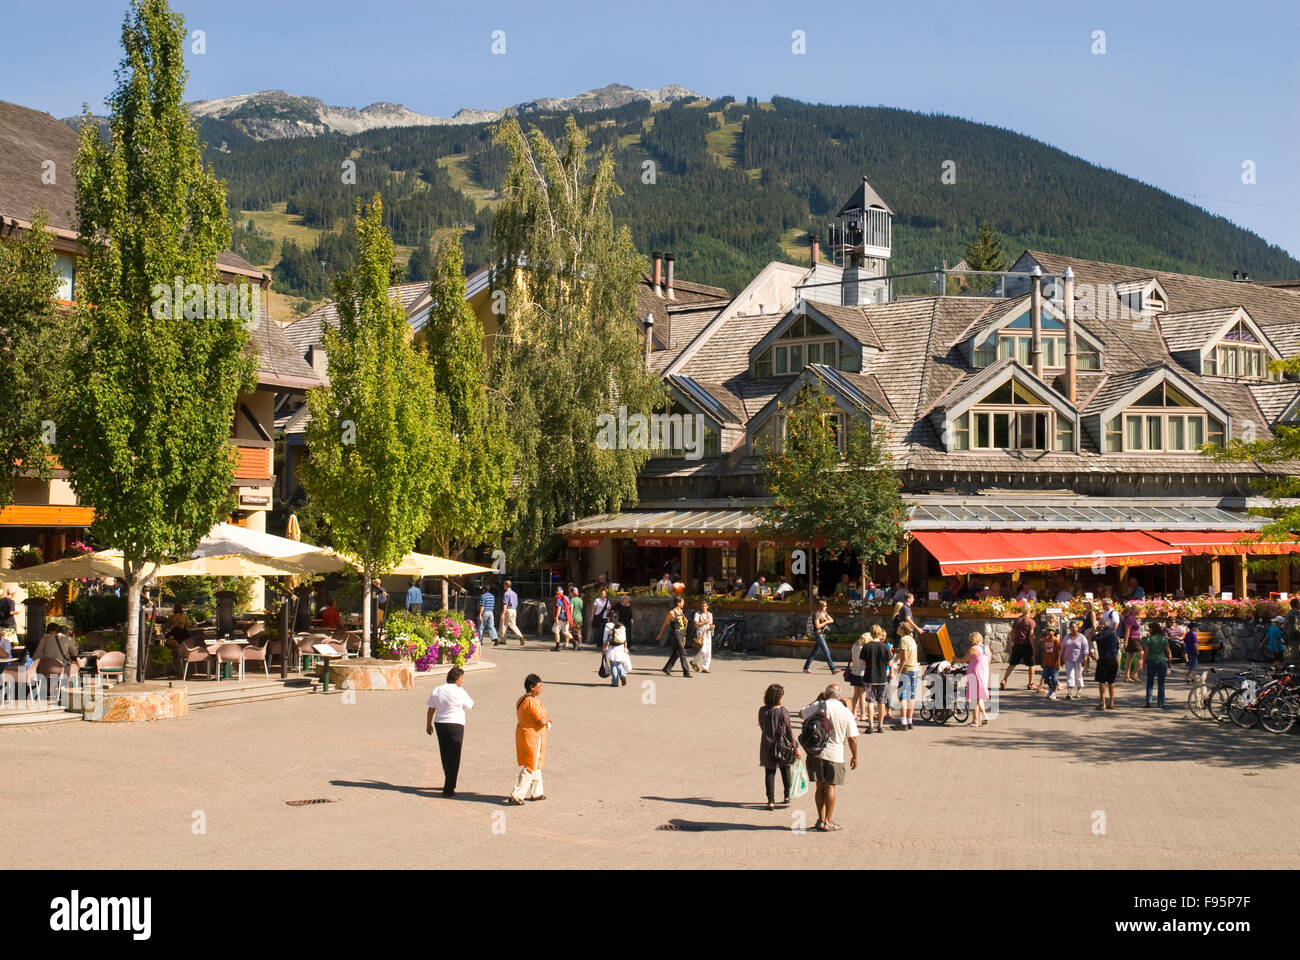 Los visitantes y residentes de la aldea pedestrianonly errante pasee en Whistler, BC durante el verano Foto de stock